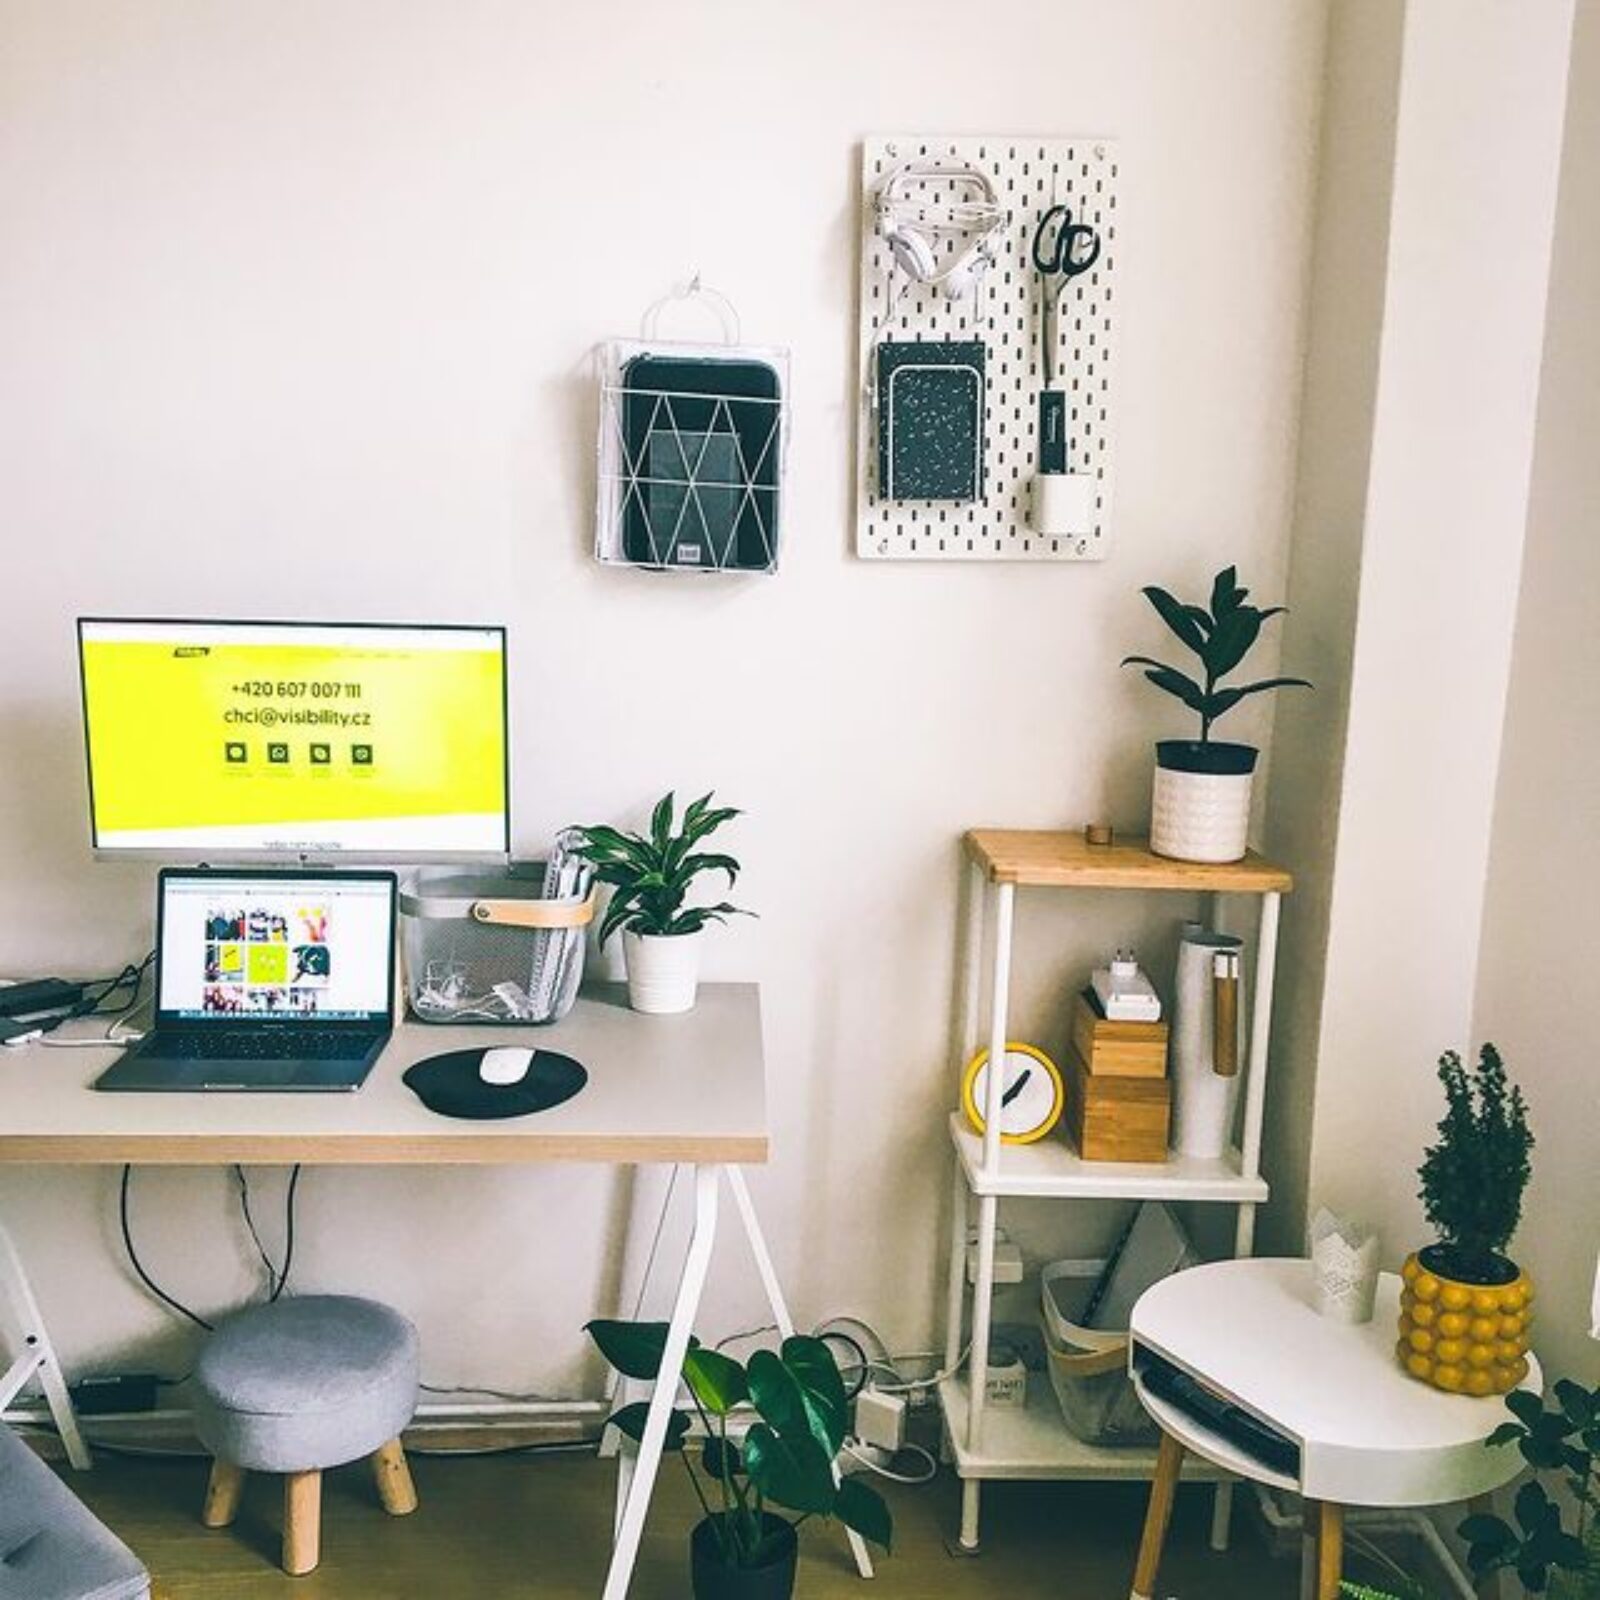 #VISItipy – Jak zvládnout home office